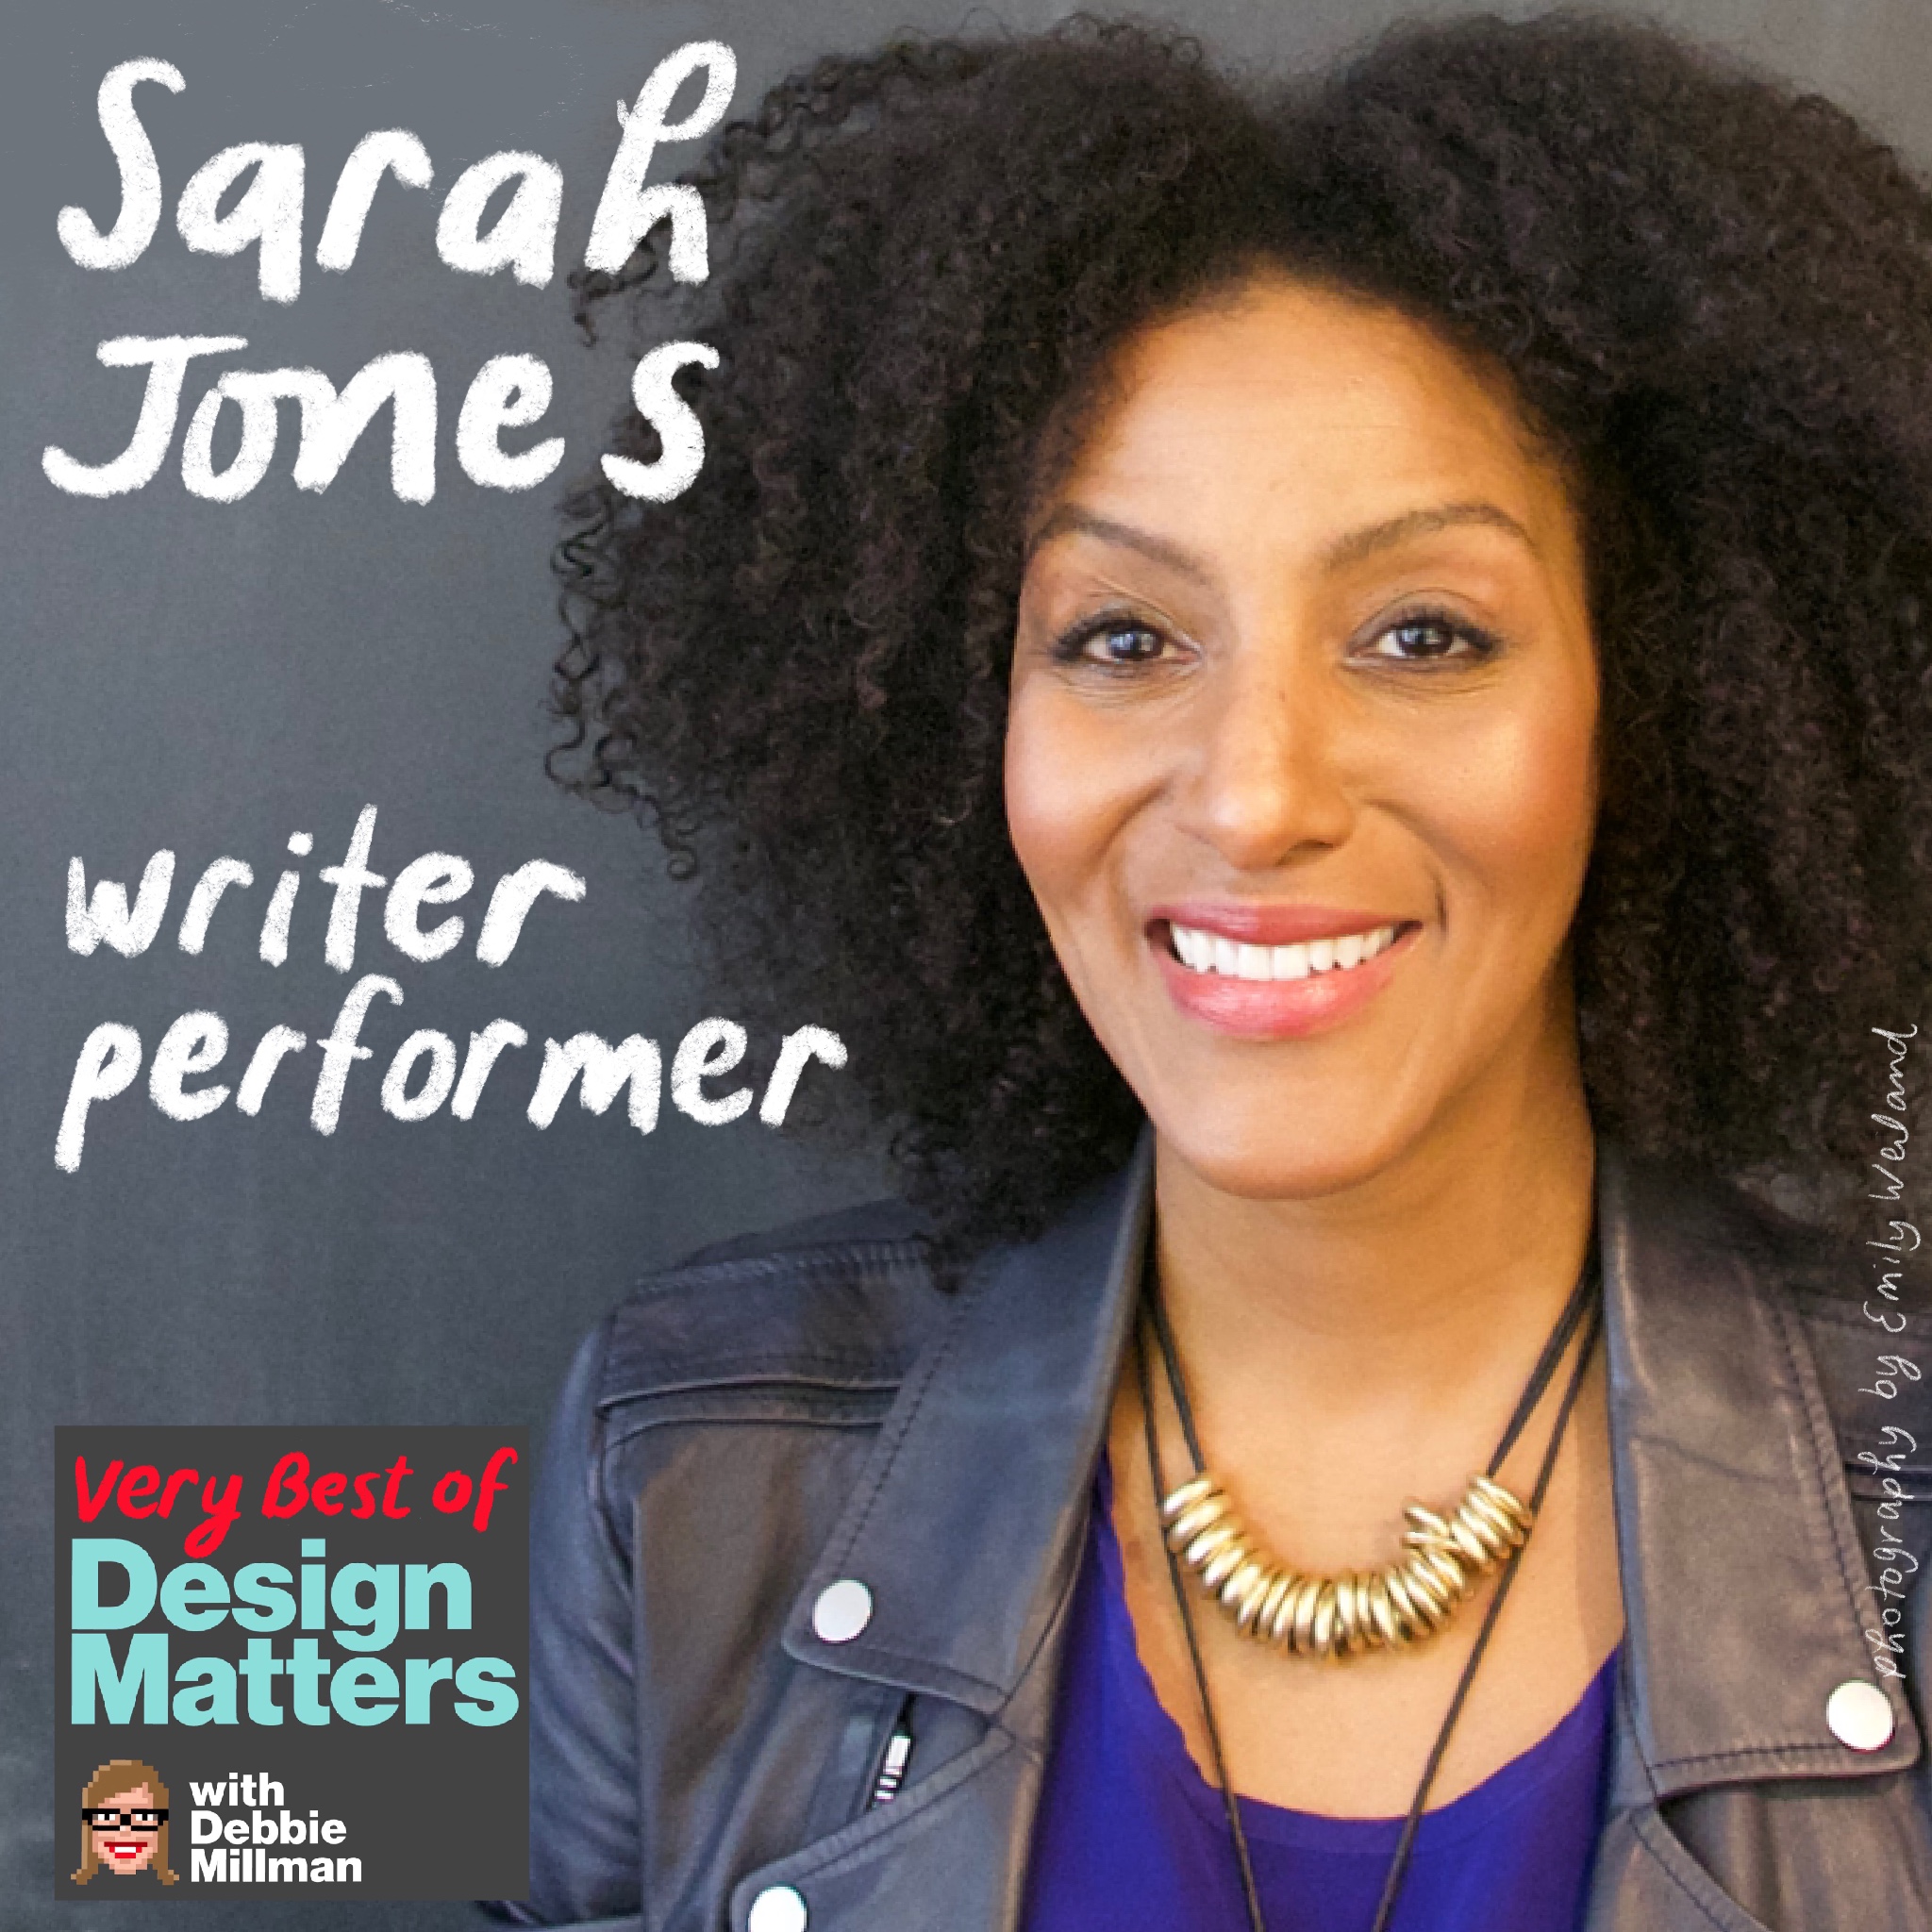 Best of Design Matters: Sarah Jones